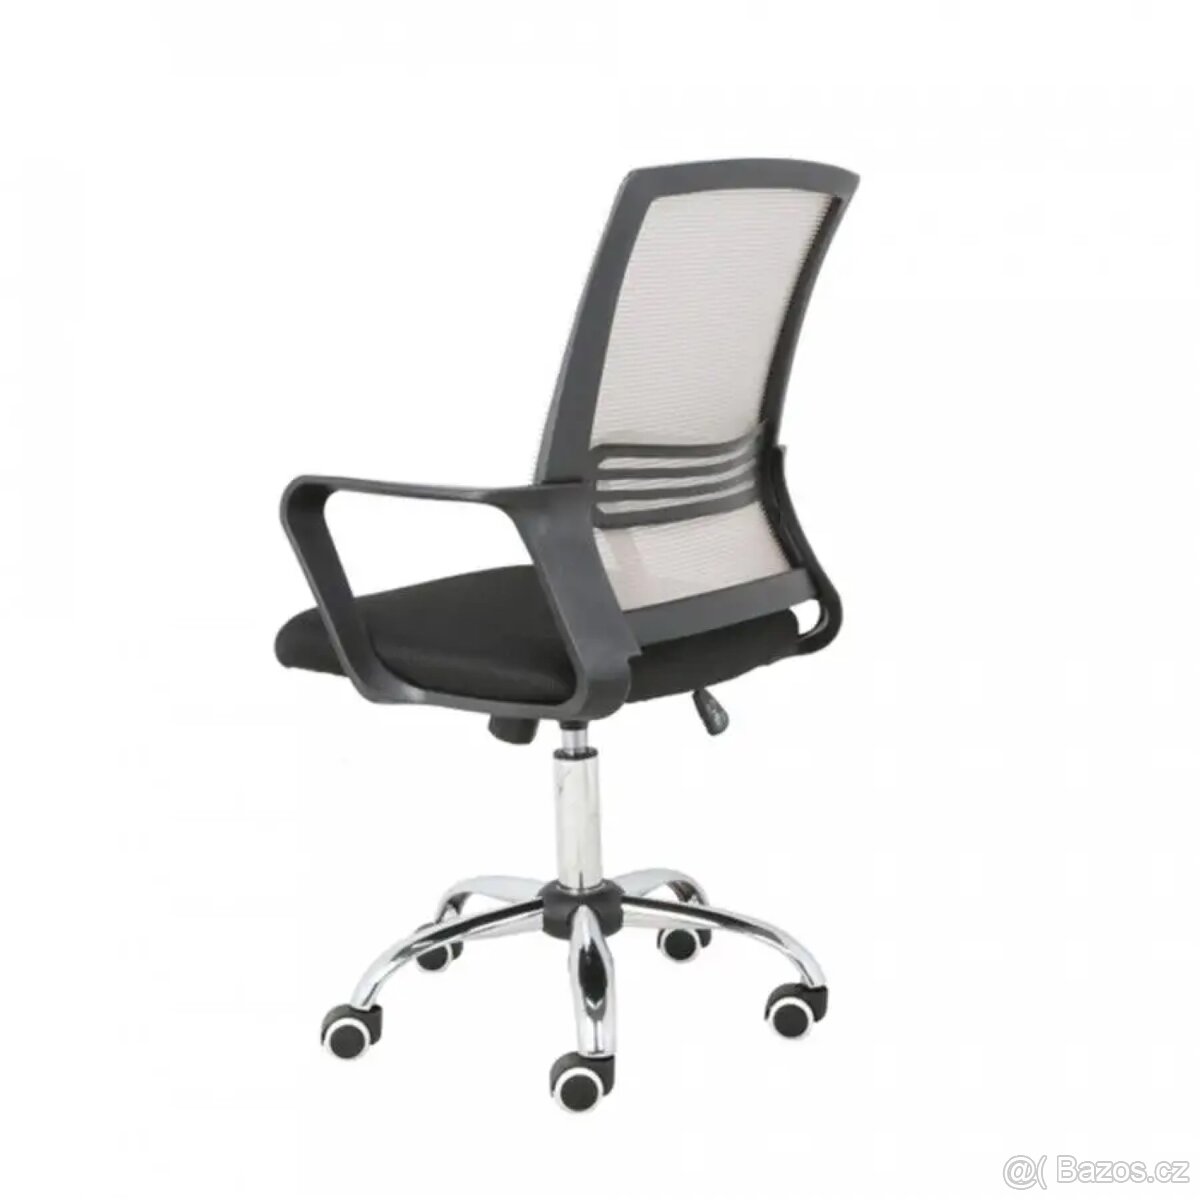 ATAN Kancelářská židle APOLO - šedohnědá Taupe/černá